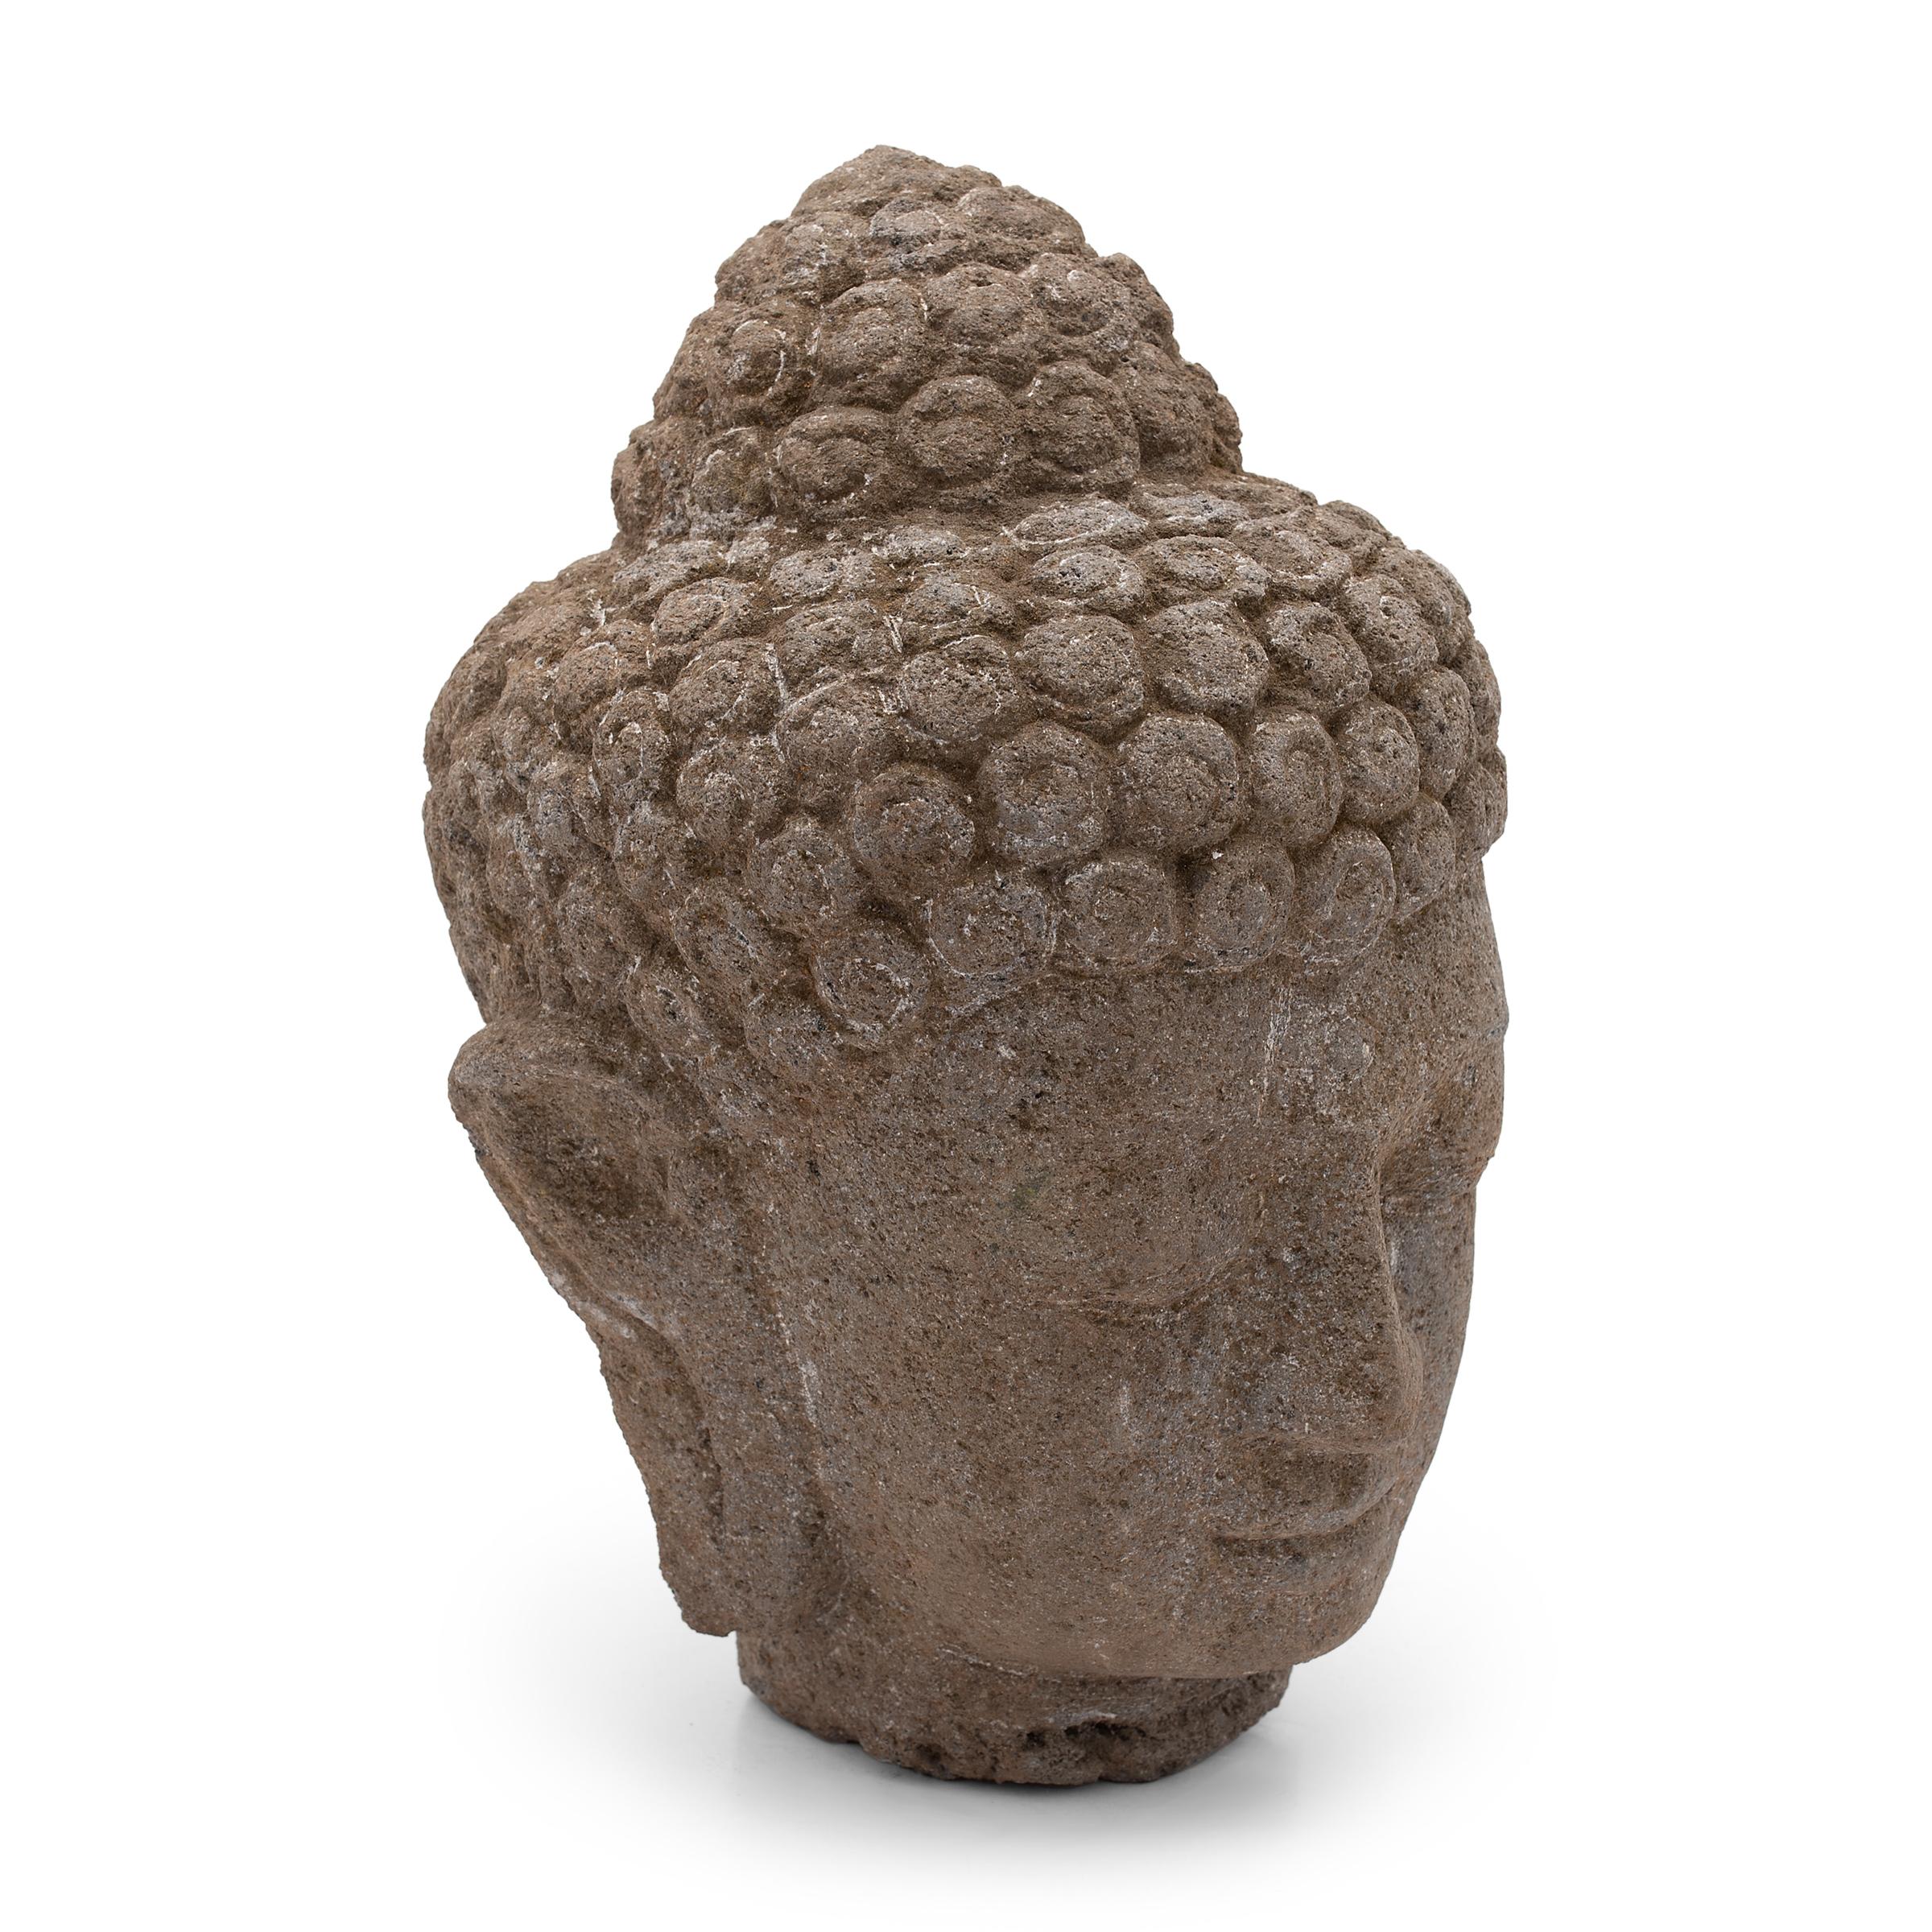 Les yeux fermés et l'expression douce, cette grande tête en pierre représente le Bouddha Shakyamuni en pleine méditation. Également connu sous les noms de SHAKA, Bouddha Gautama ou Prince Siddhartha, le Bouddha historique Shakyamuni incarne les